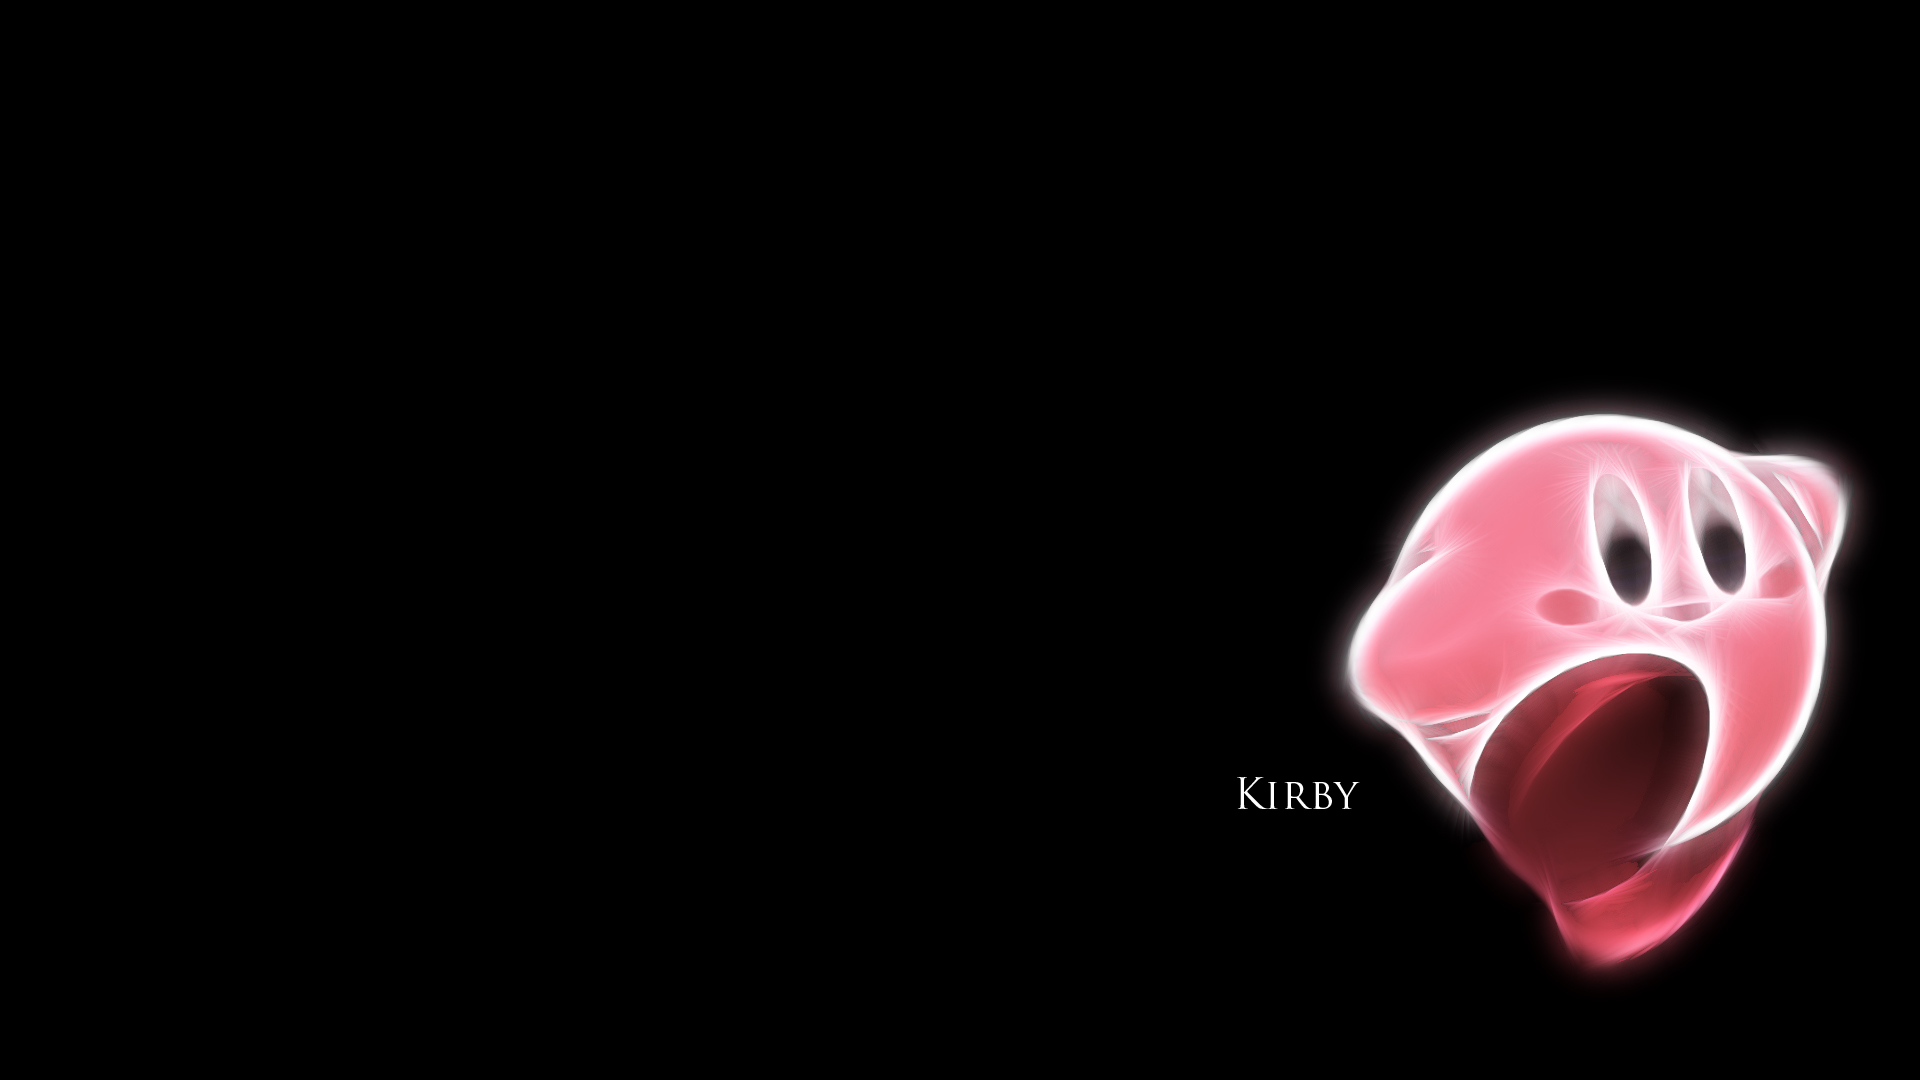 Kirby Air Ride qua màn hình của bạn! Xem hình nền này giúp bạn tái hiện lại những cảm xúc của mình khi chơi game với chú rắn Kirby dễ thương. Bức hình nền đơn giản nhưng rất thu hút và sẽ mang lại cho bạn sự đổi mới trong ngày hôm nay.